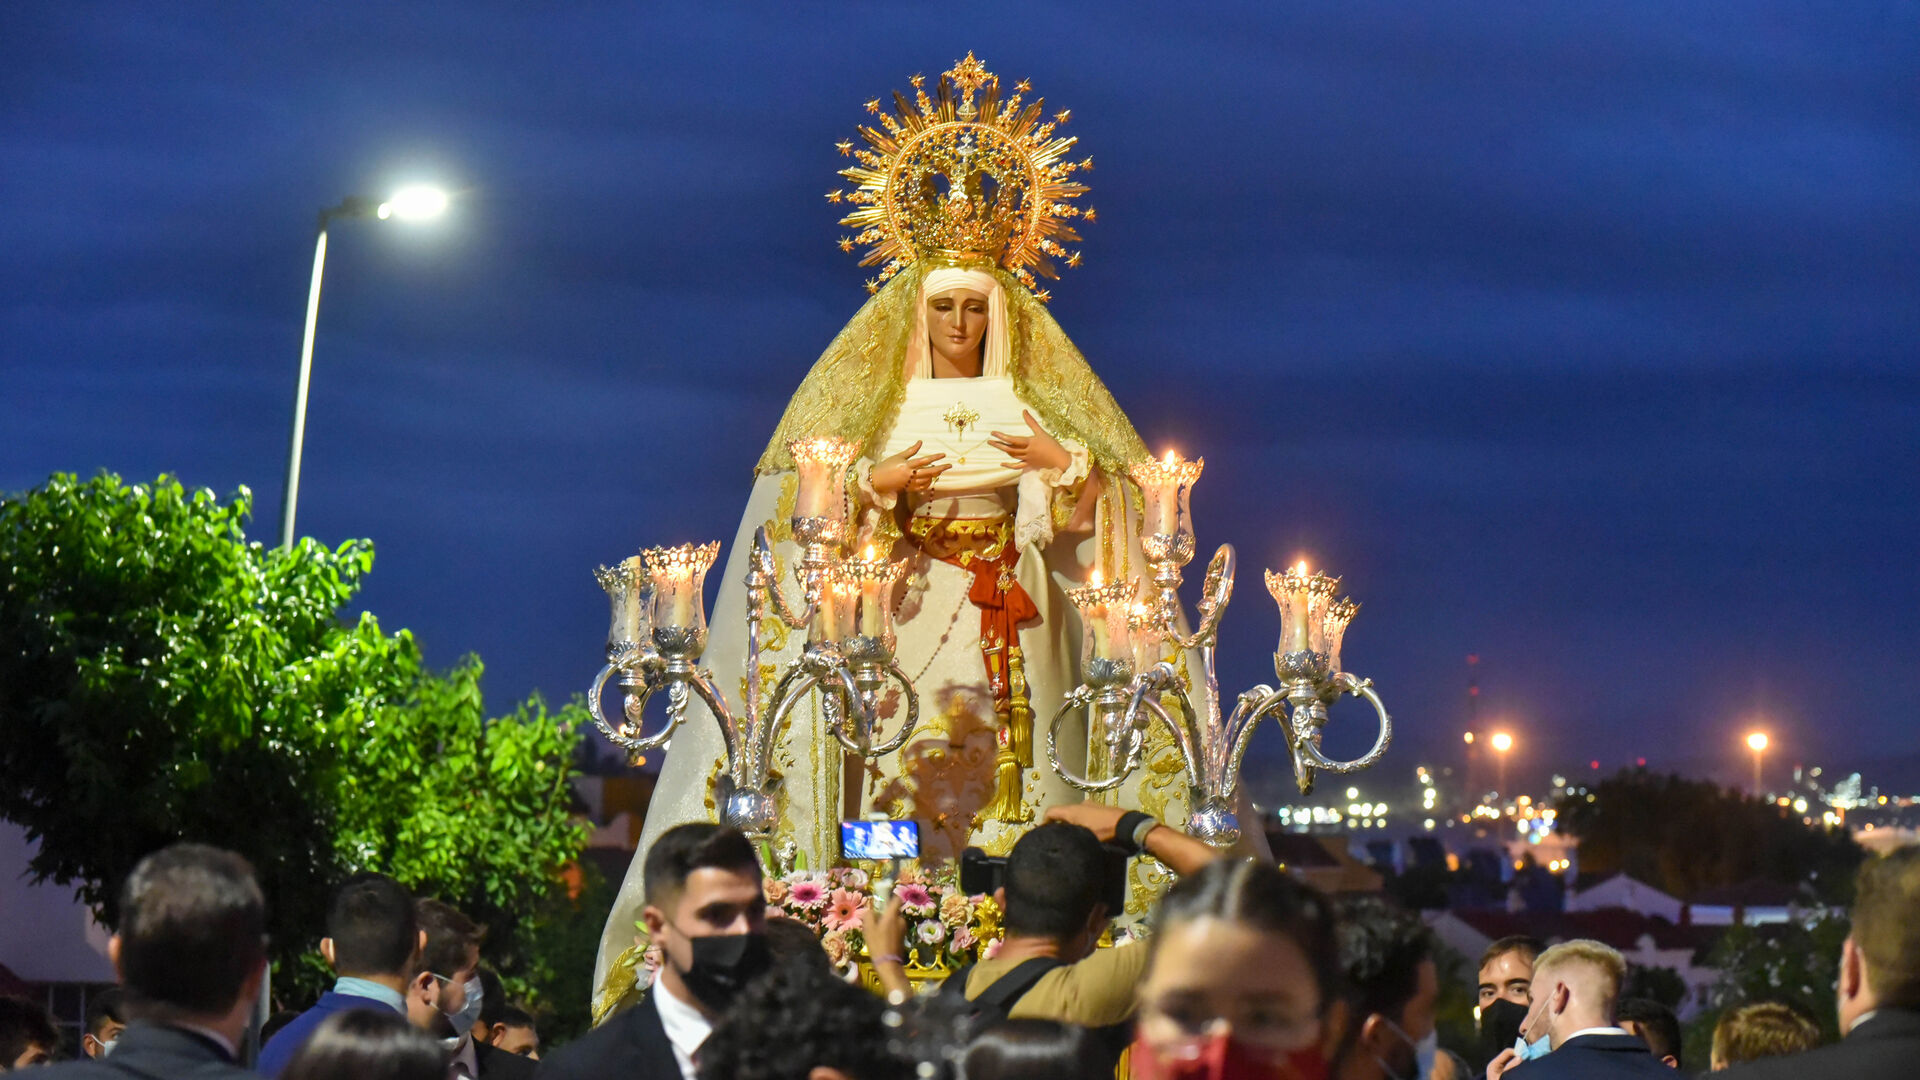 Las fotos de la Virgen de la Salud procesionando en la barriada de San Garcia